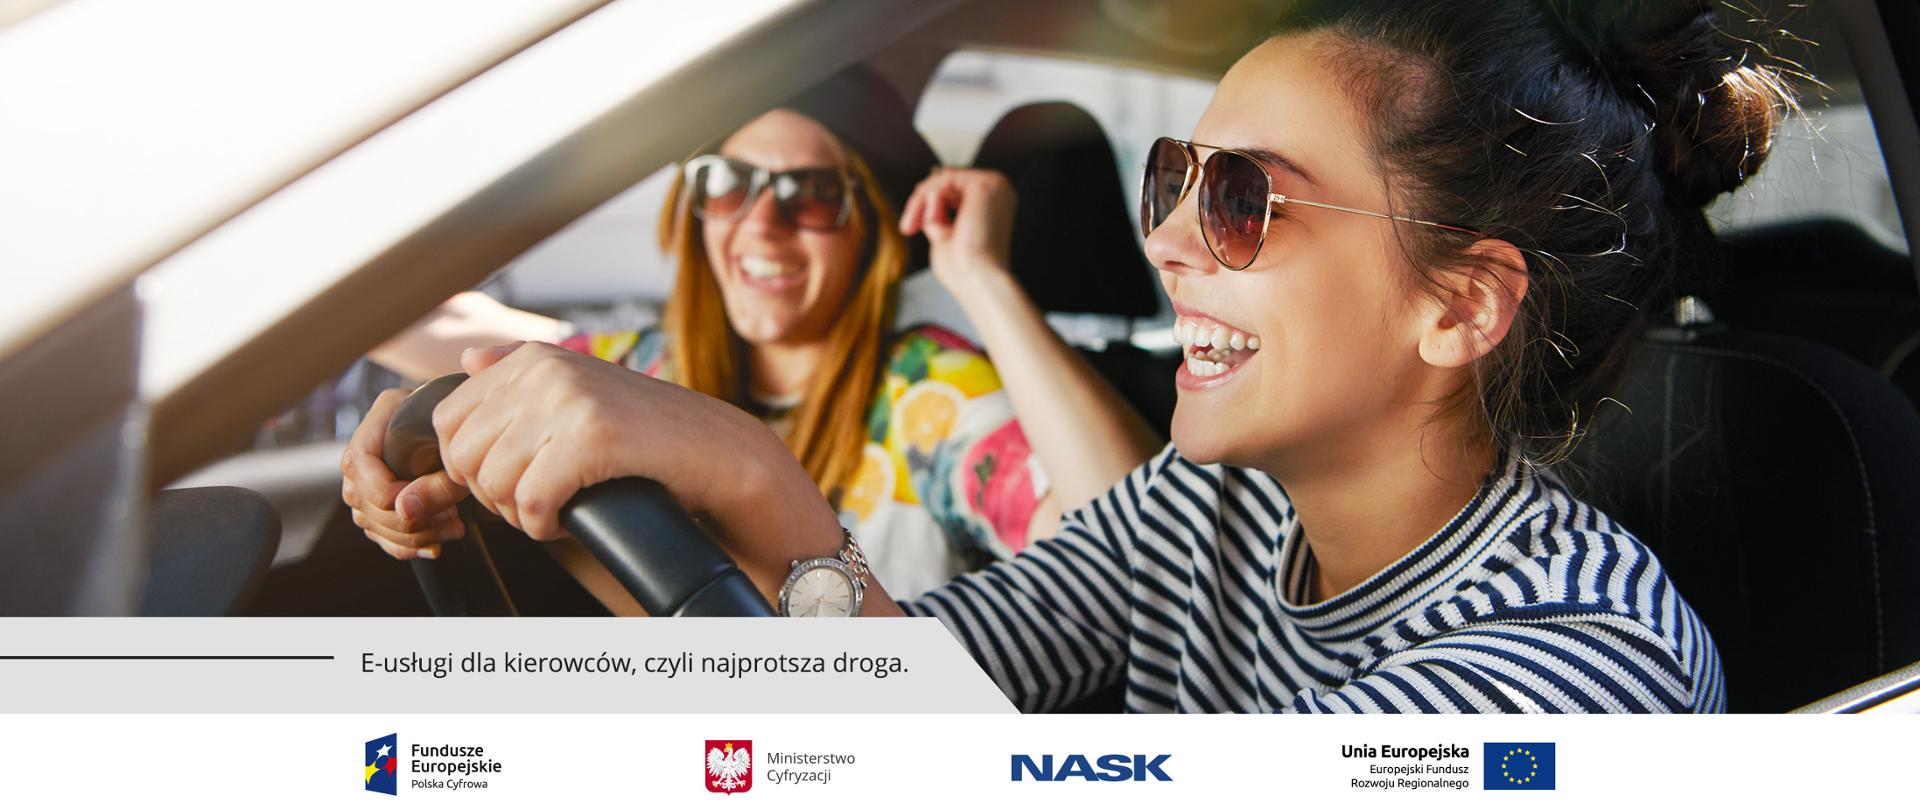 Dwie śmiejące się młode kobiety w okularach przeciwsłonecznych. Jedna kieruje samochodem, druga jest pasażerką.